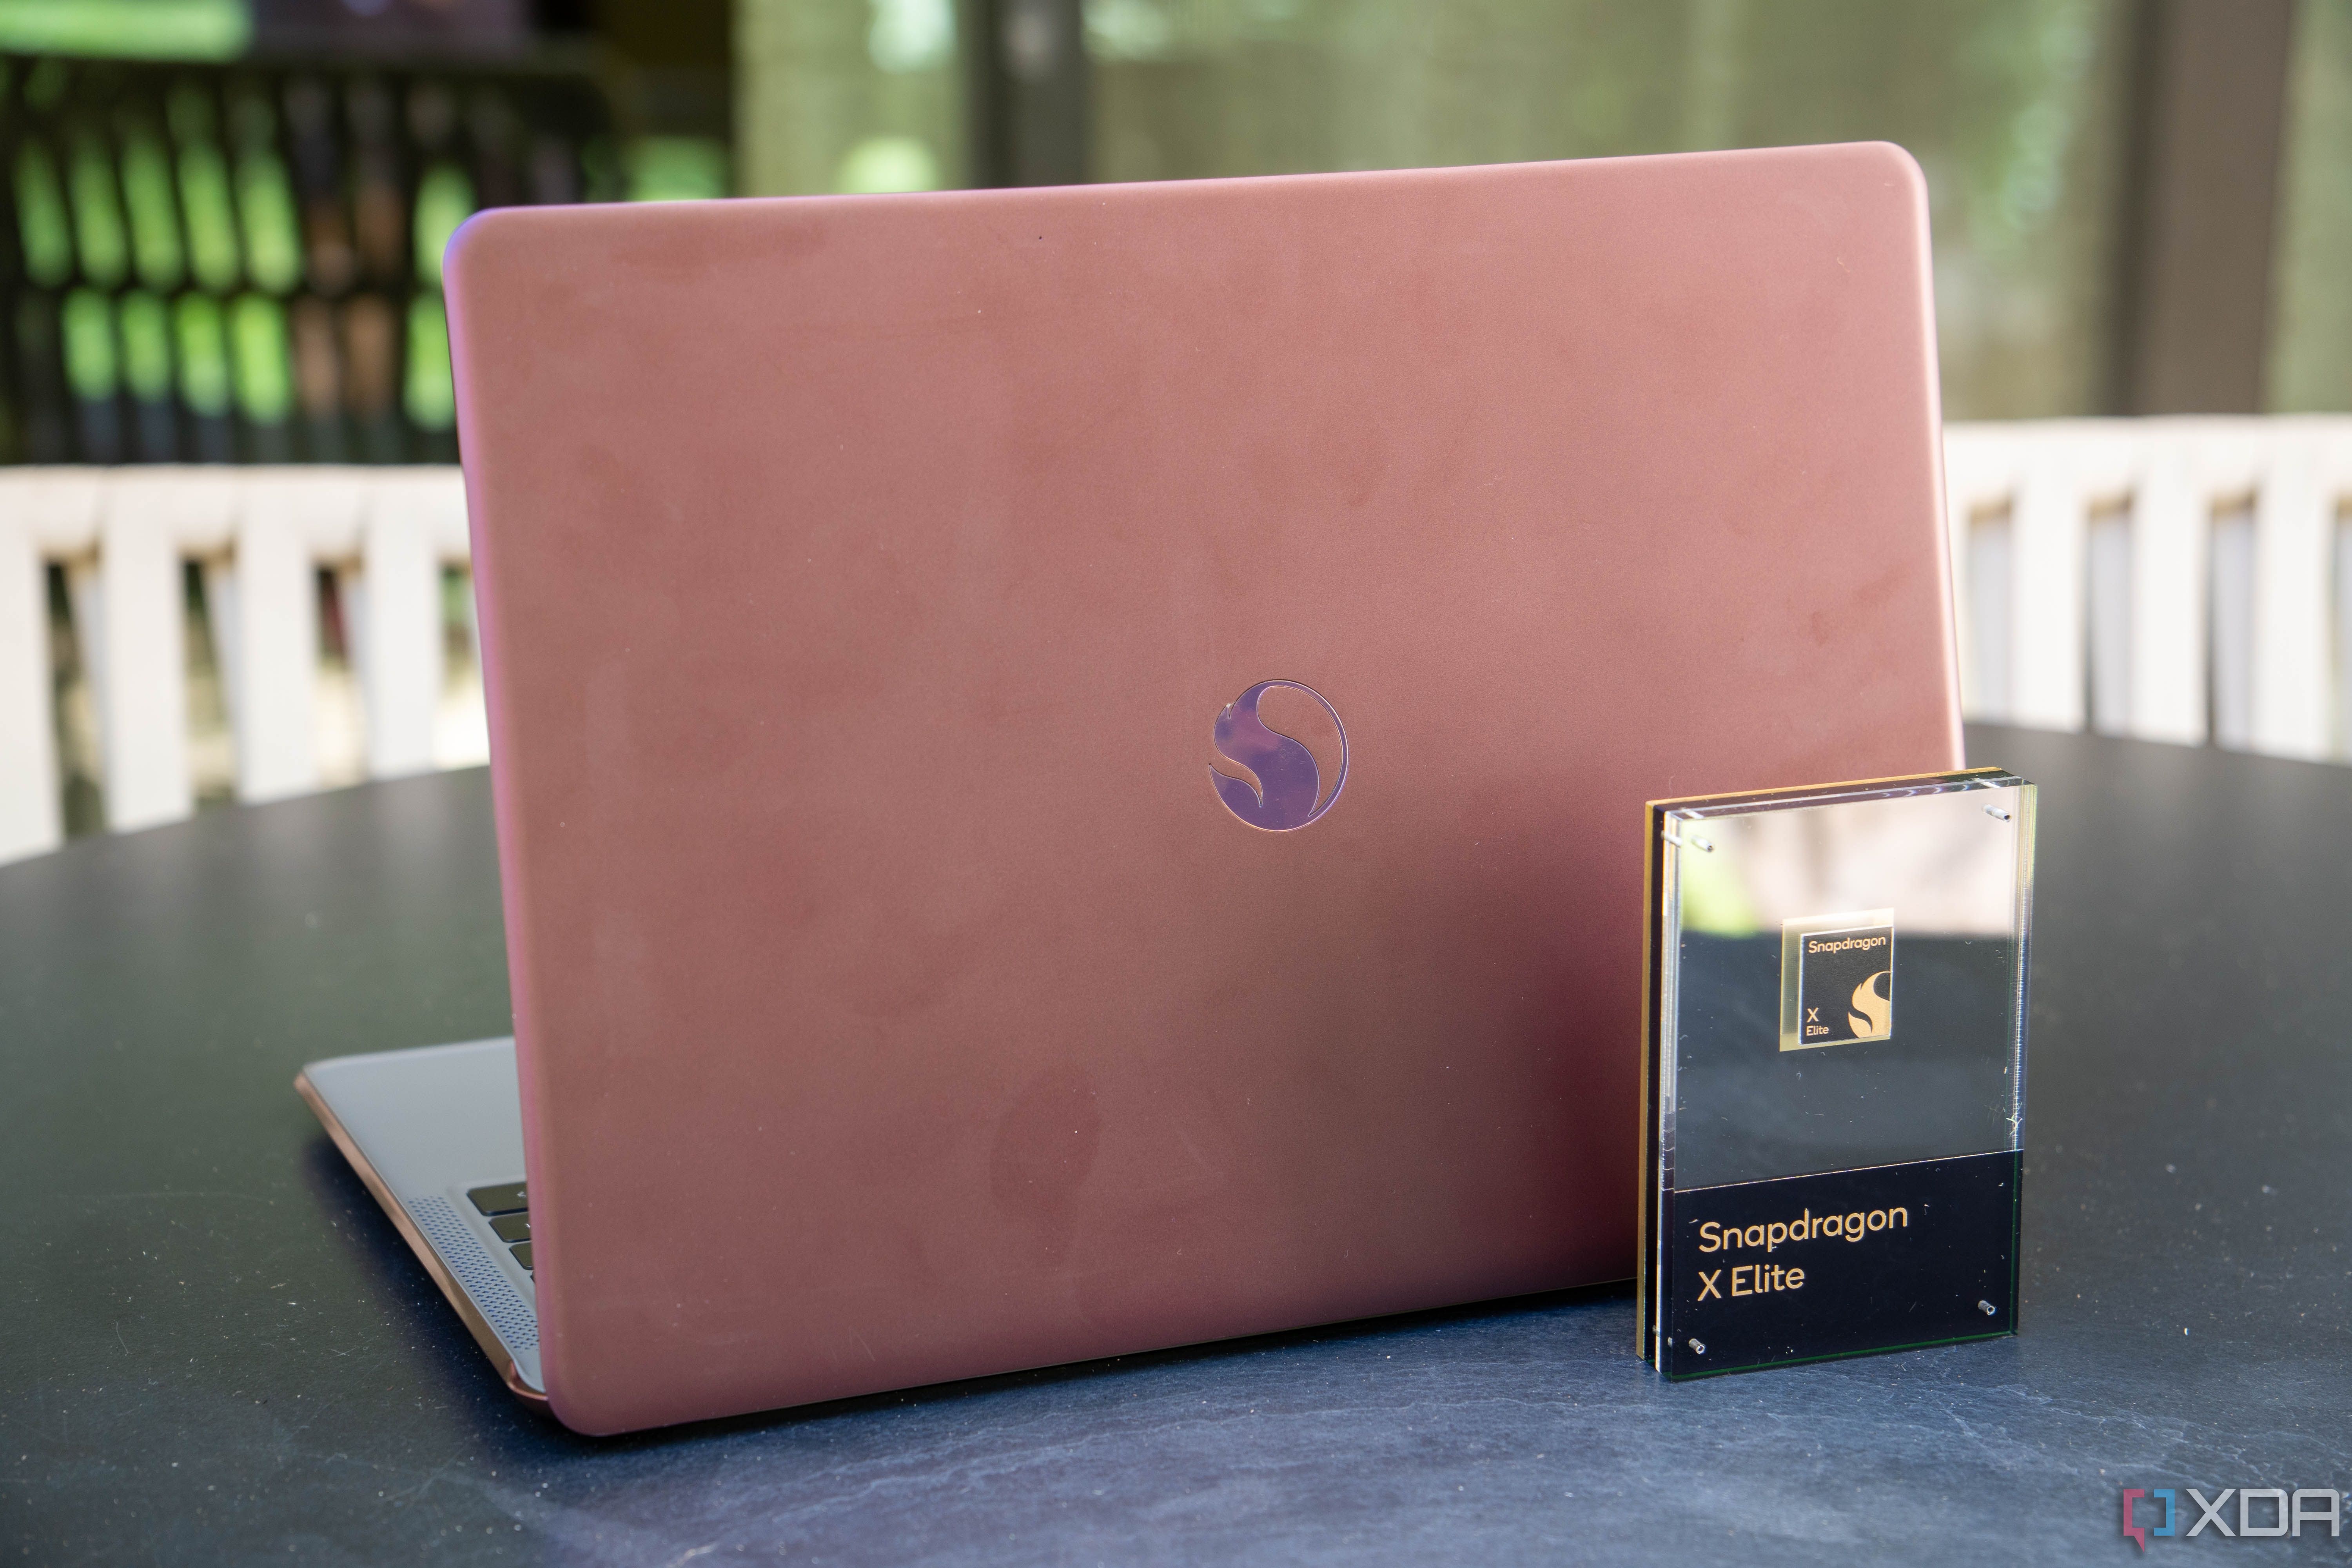 A Snapdragon X Elite branded laptop.